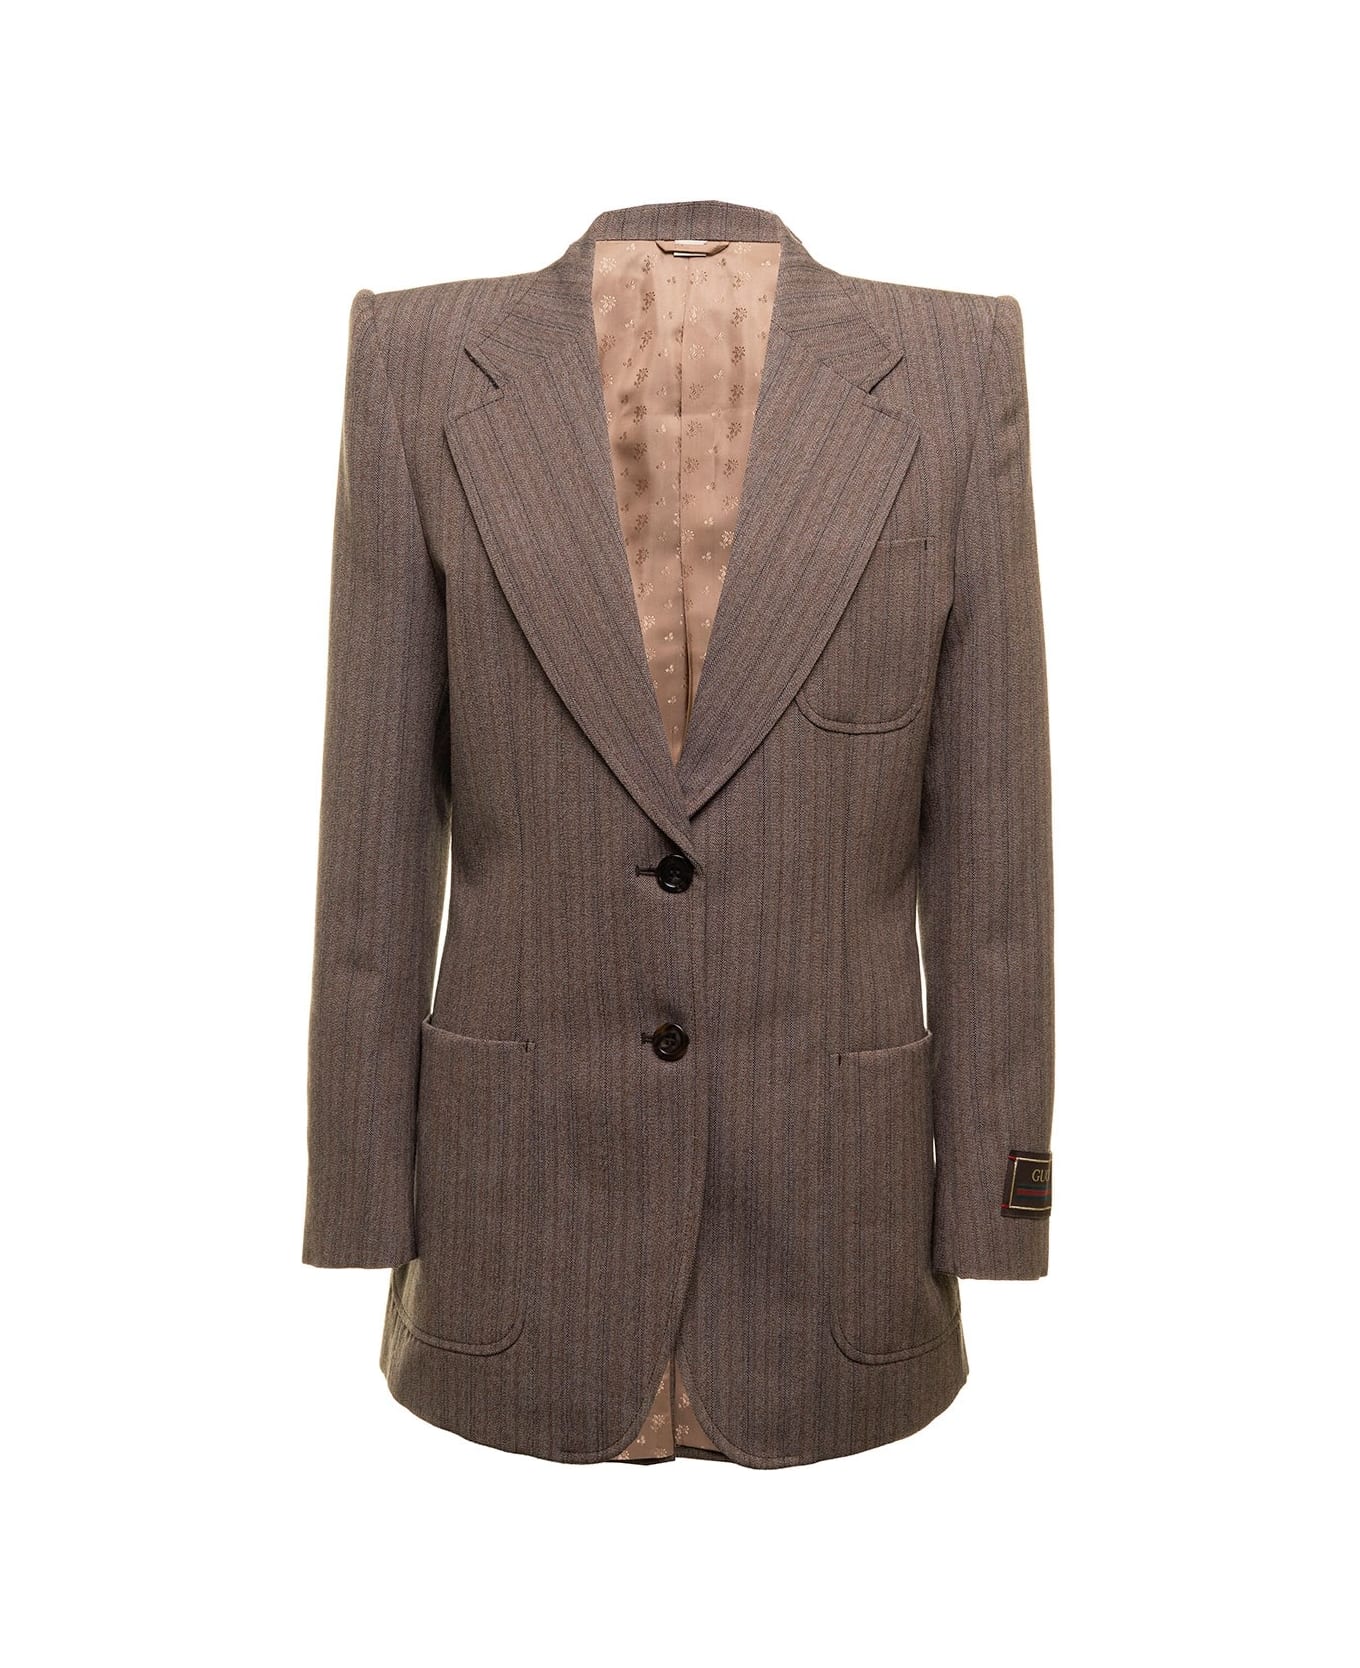 Gucci Herringbone Wool Jacket